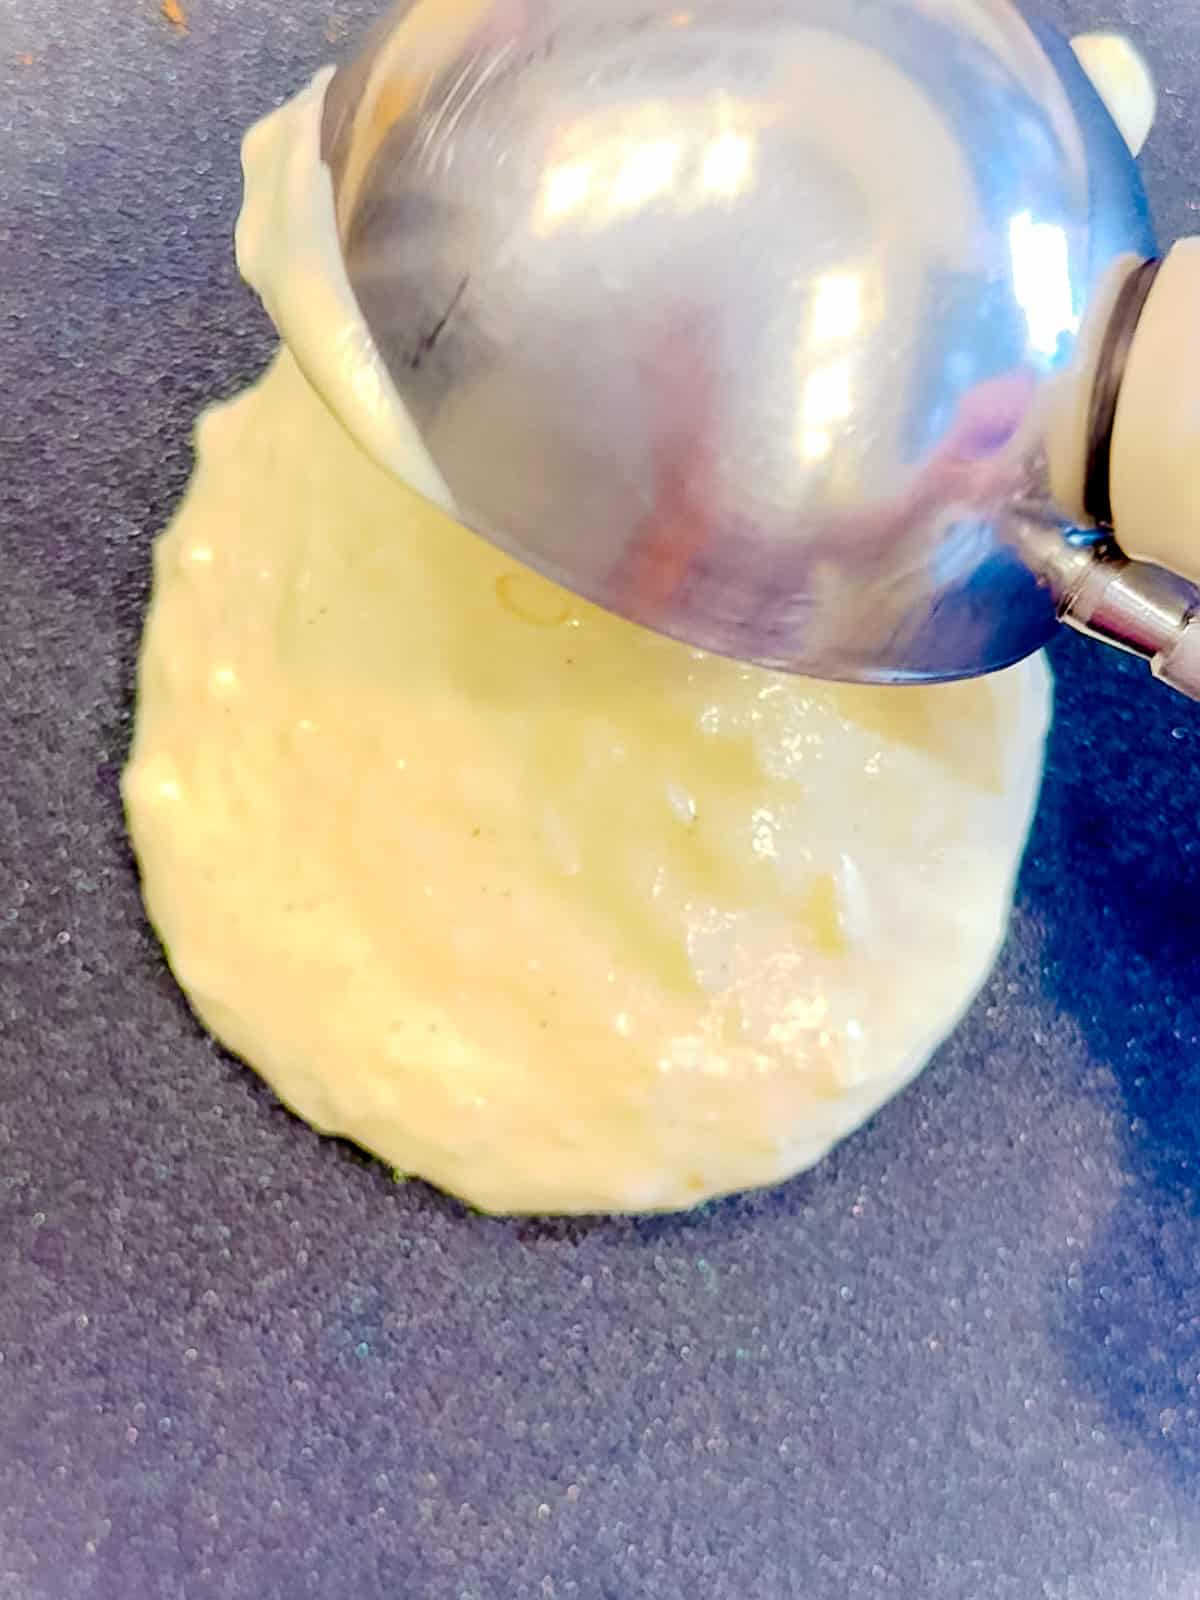 Scooping pancake batter onto nonstick pan.